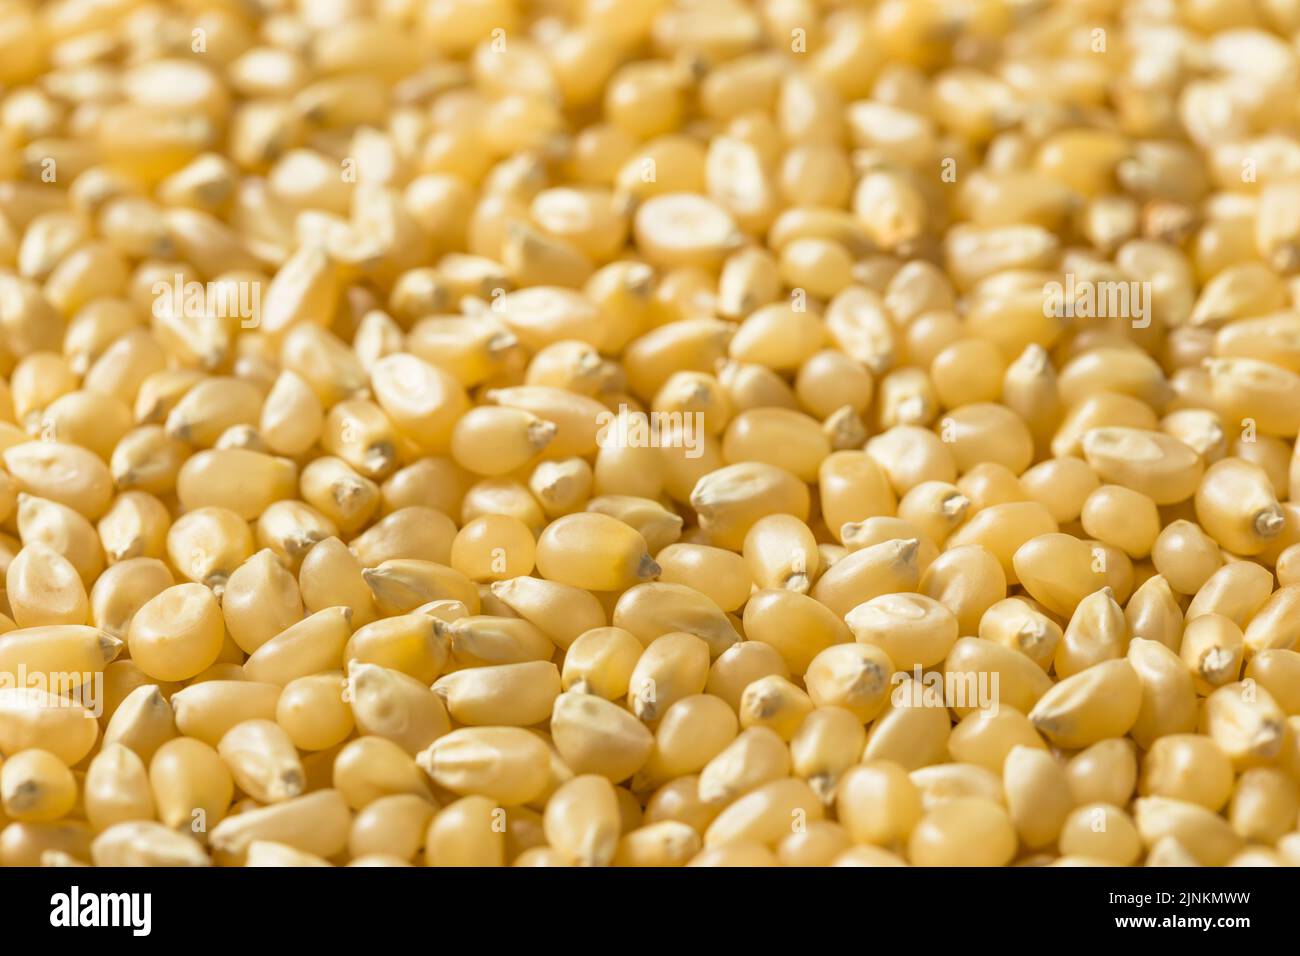 https://c8.alamy.com/comp/2JNKMWW/dry-organic-white-popcorn-kernels-in-a-bowl-2JNKMWW.jpg